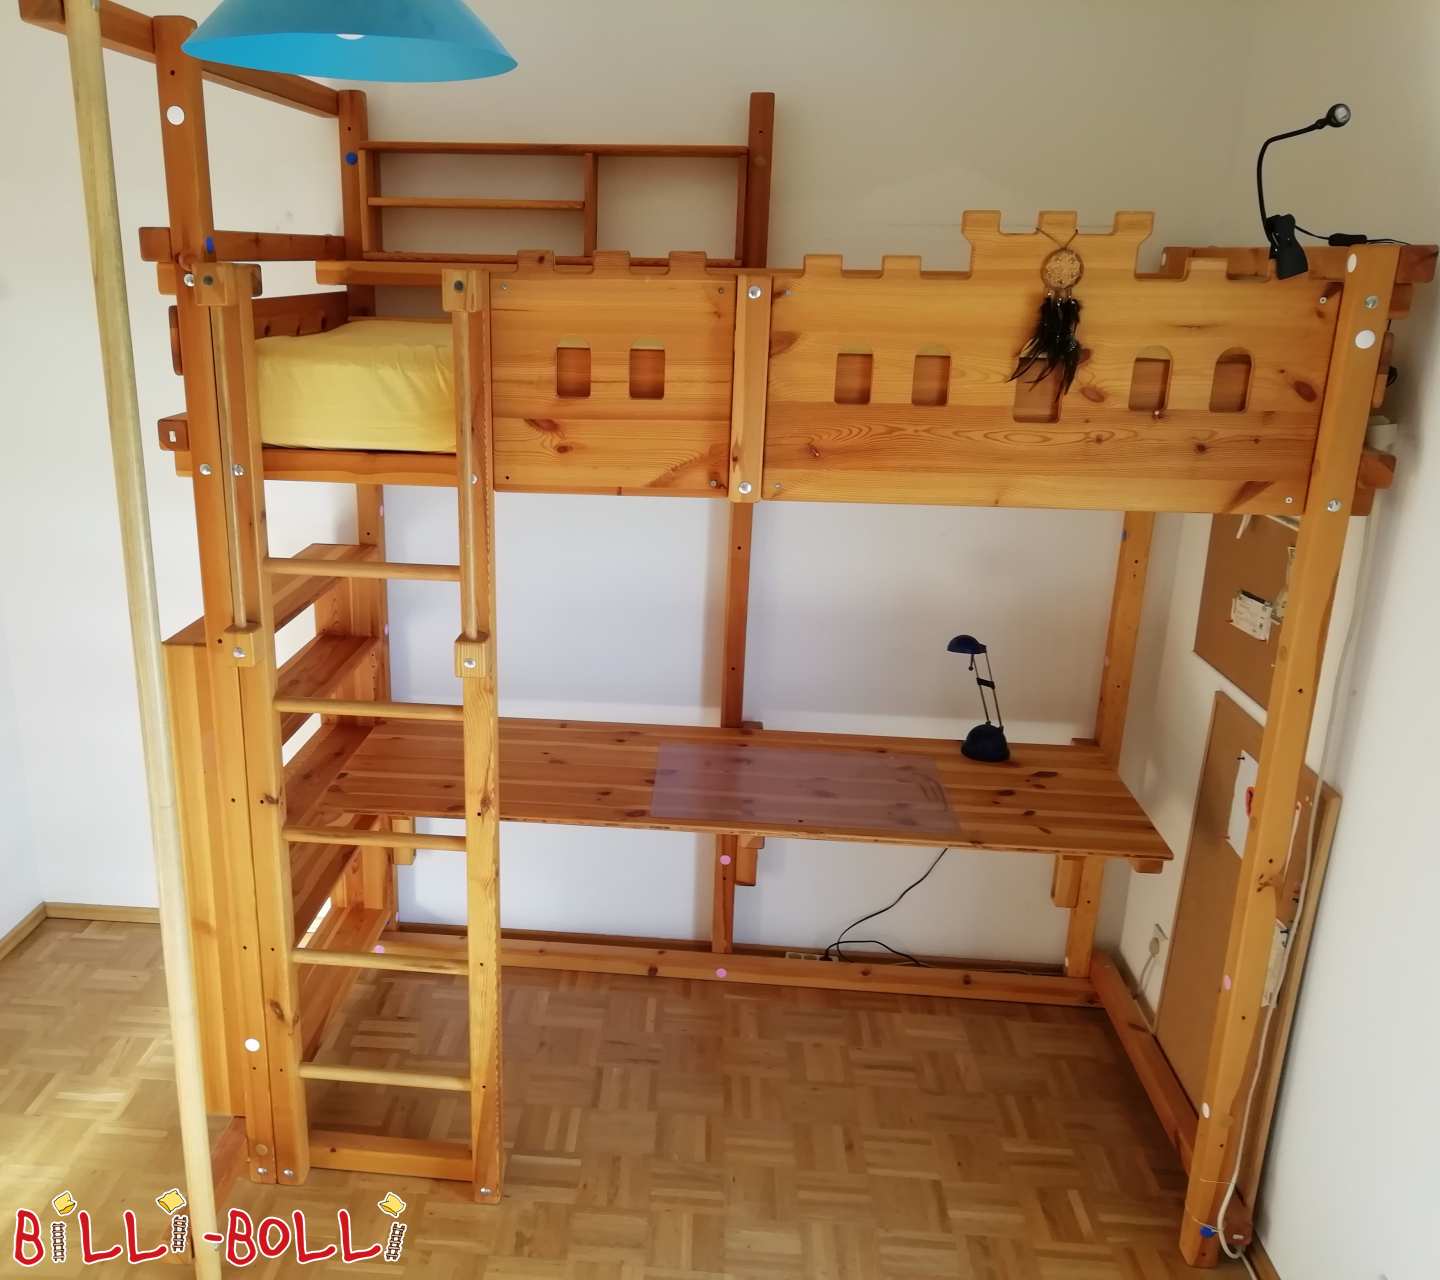 Palėpės lova, įskaitant ugniagesių stulpą, skersinę sieną ir rašymo lentą (Kategorija: Naudojama palėpės lova)